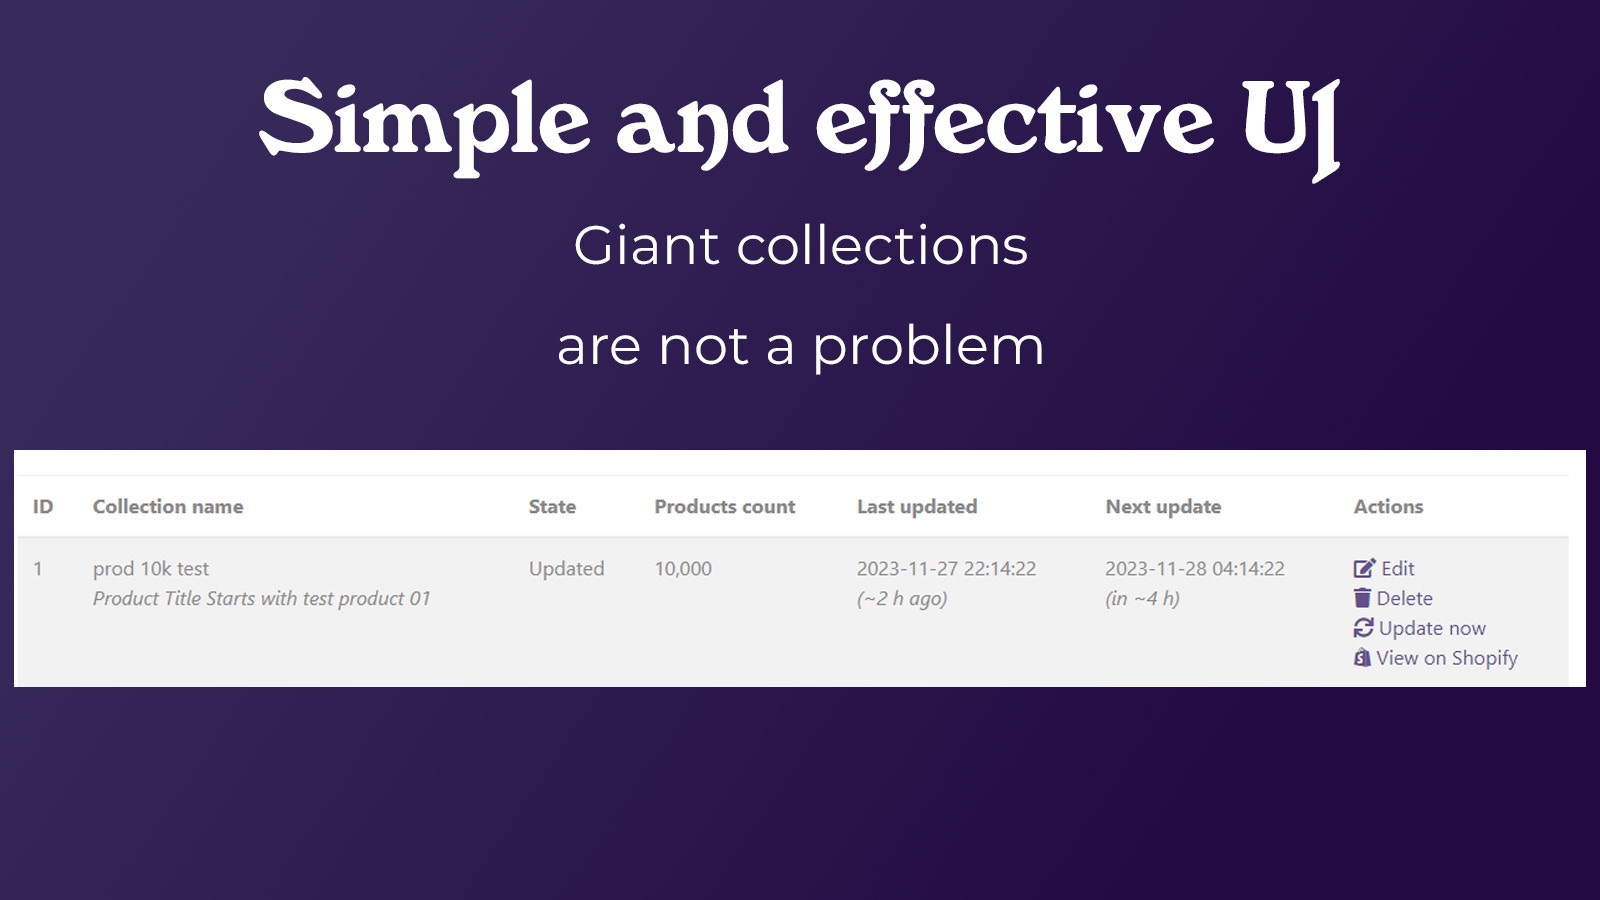 Enkel och effektivt användargränssnitt stöder små & stora samlingar